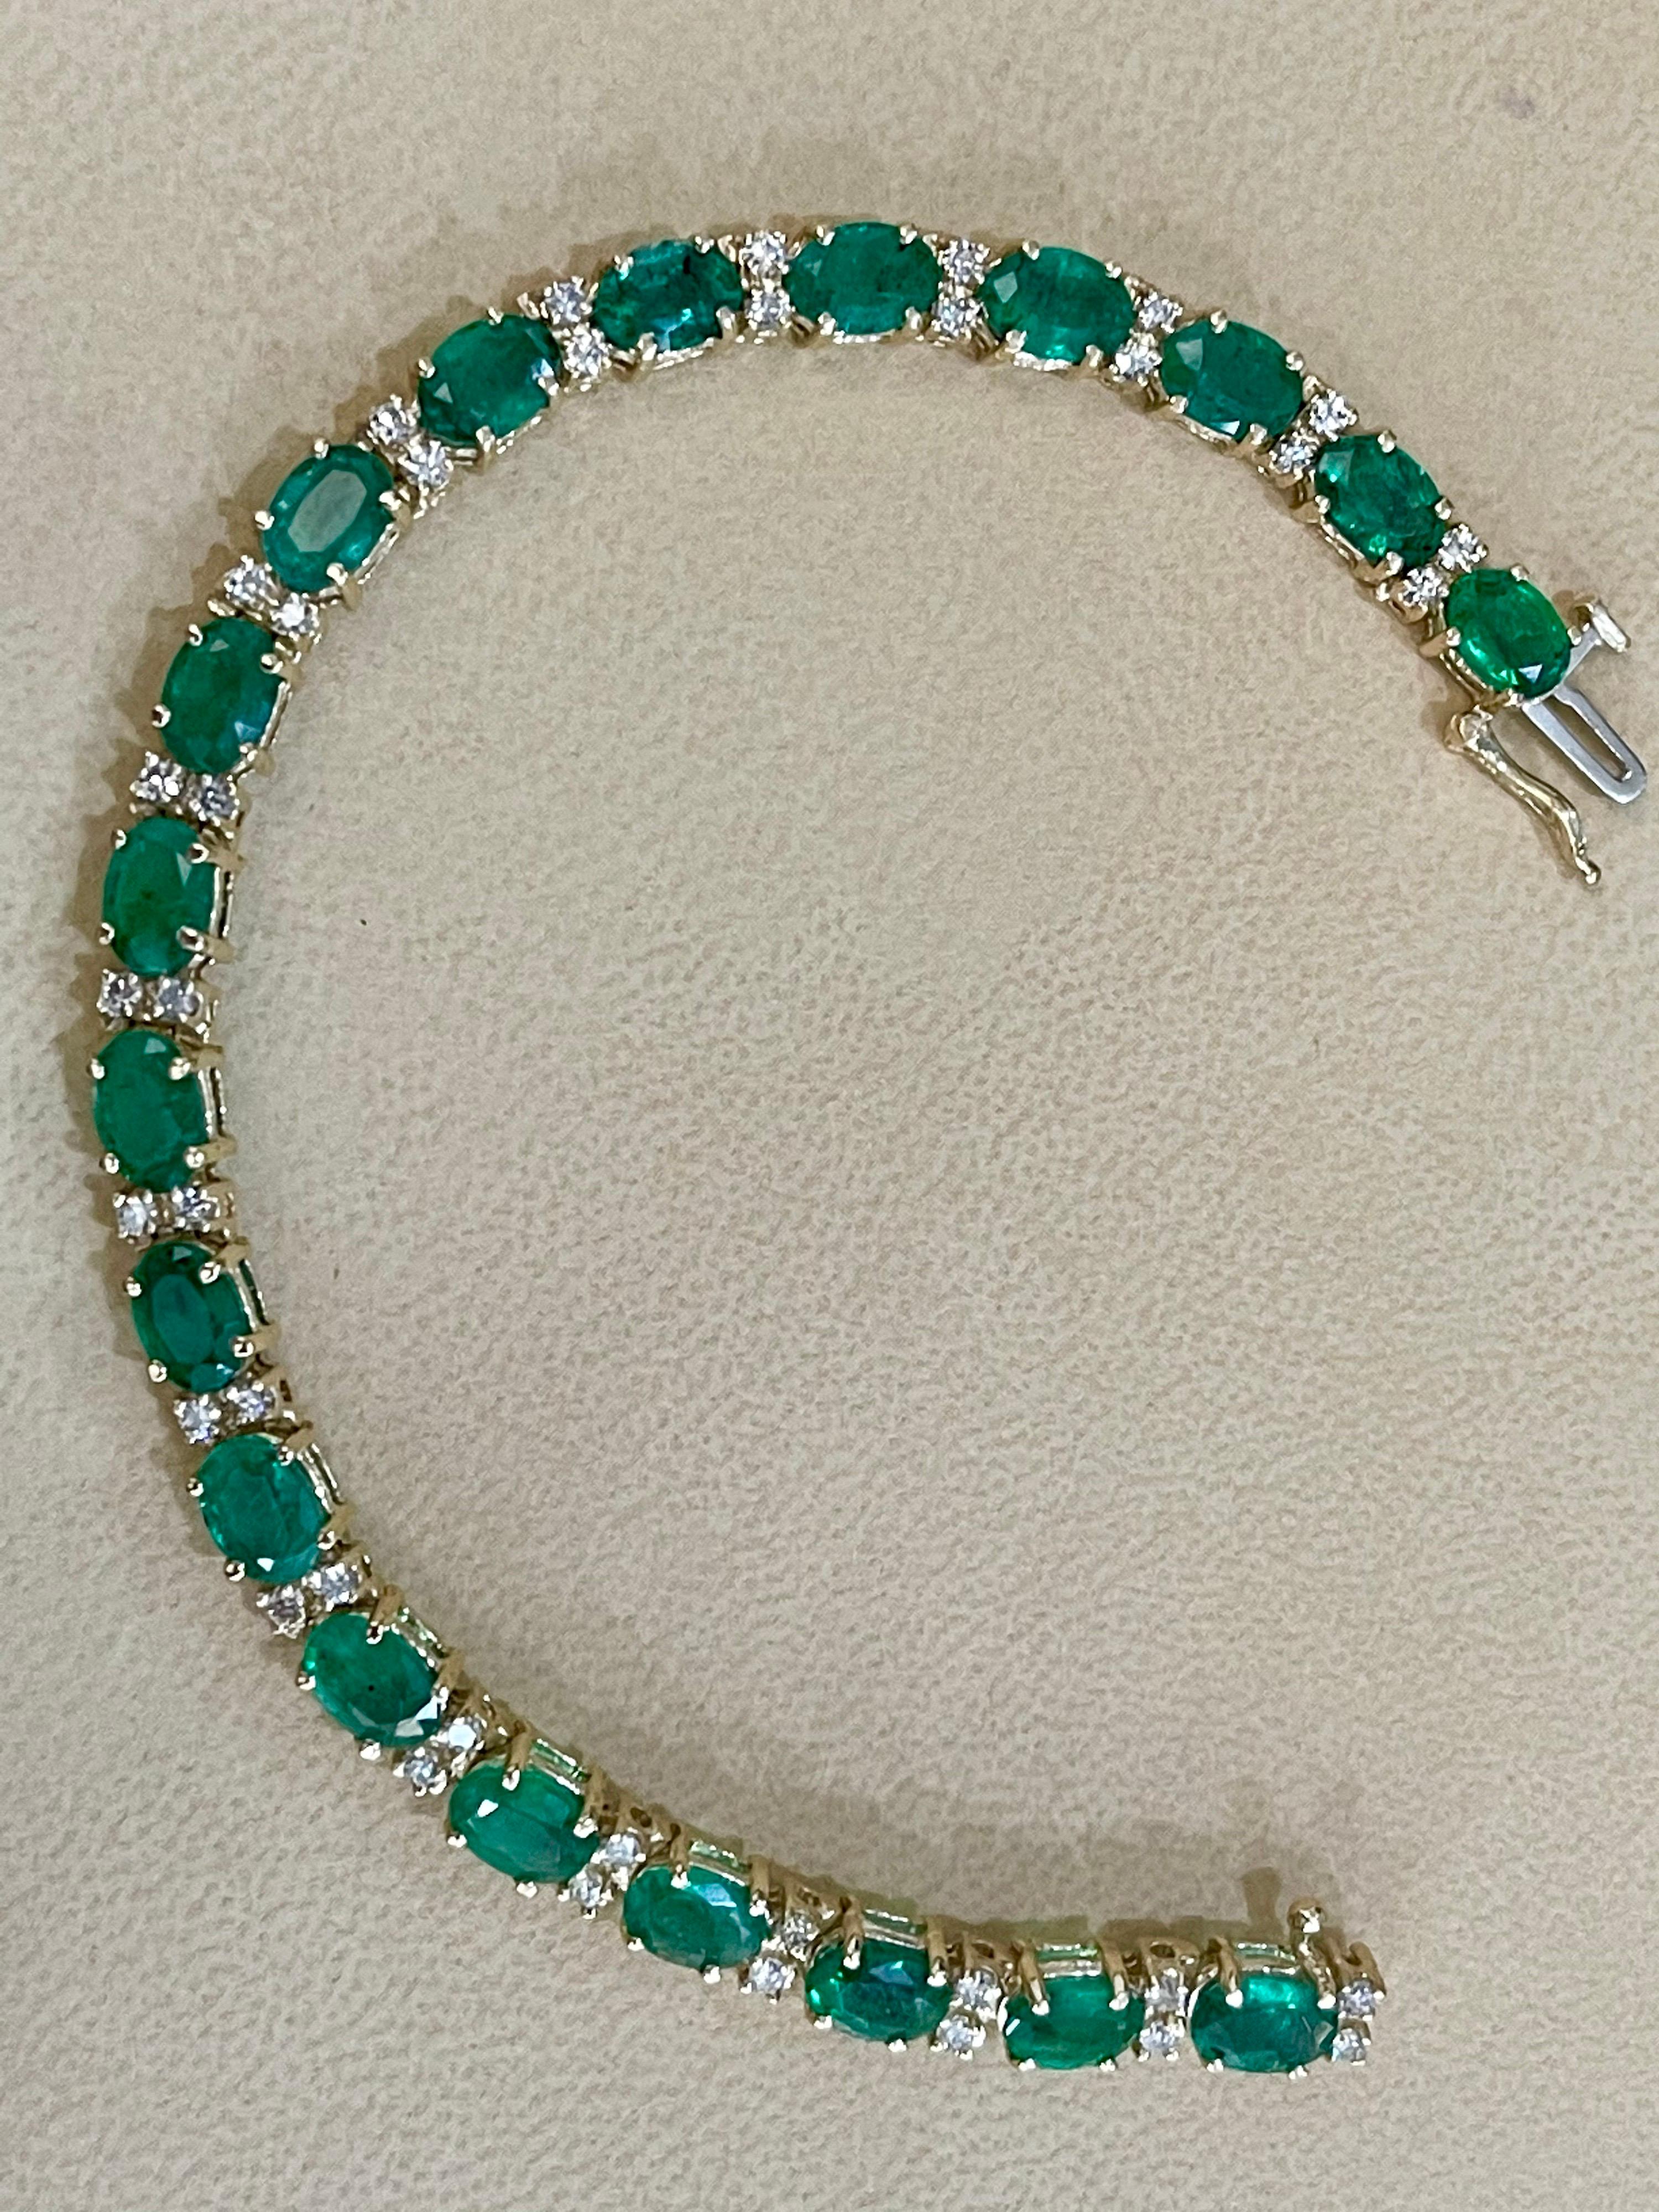 13 Carat Natural Emerald & Diamond Cocktail Tennis Bracelet 14 Karat Yellow Gold 2